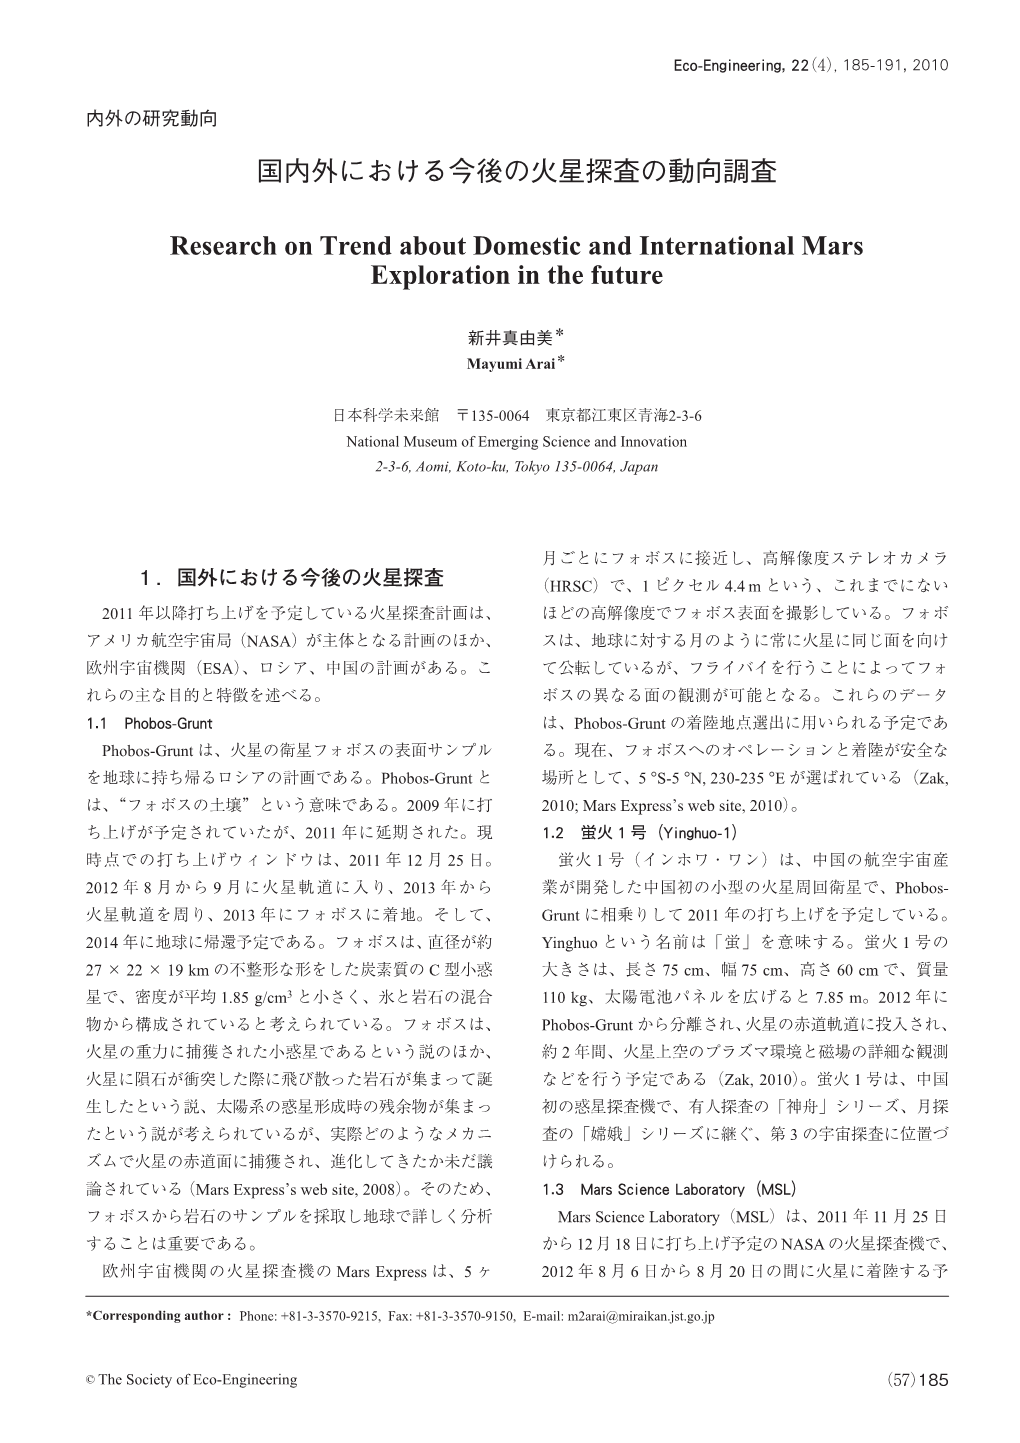 国内外における今後の火星探査の動向調査 Research on Trend About